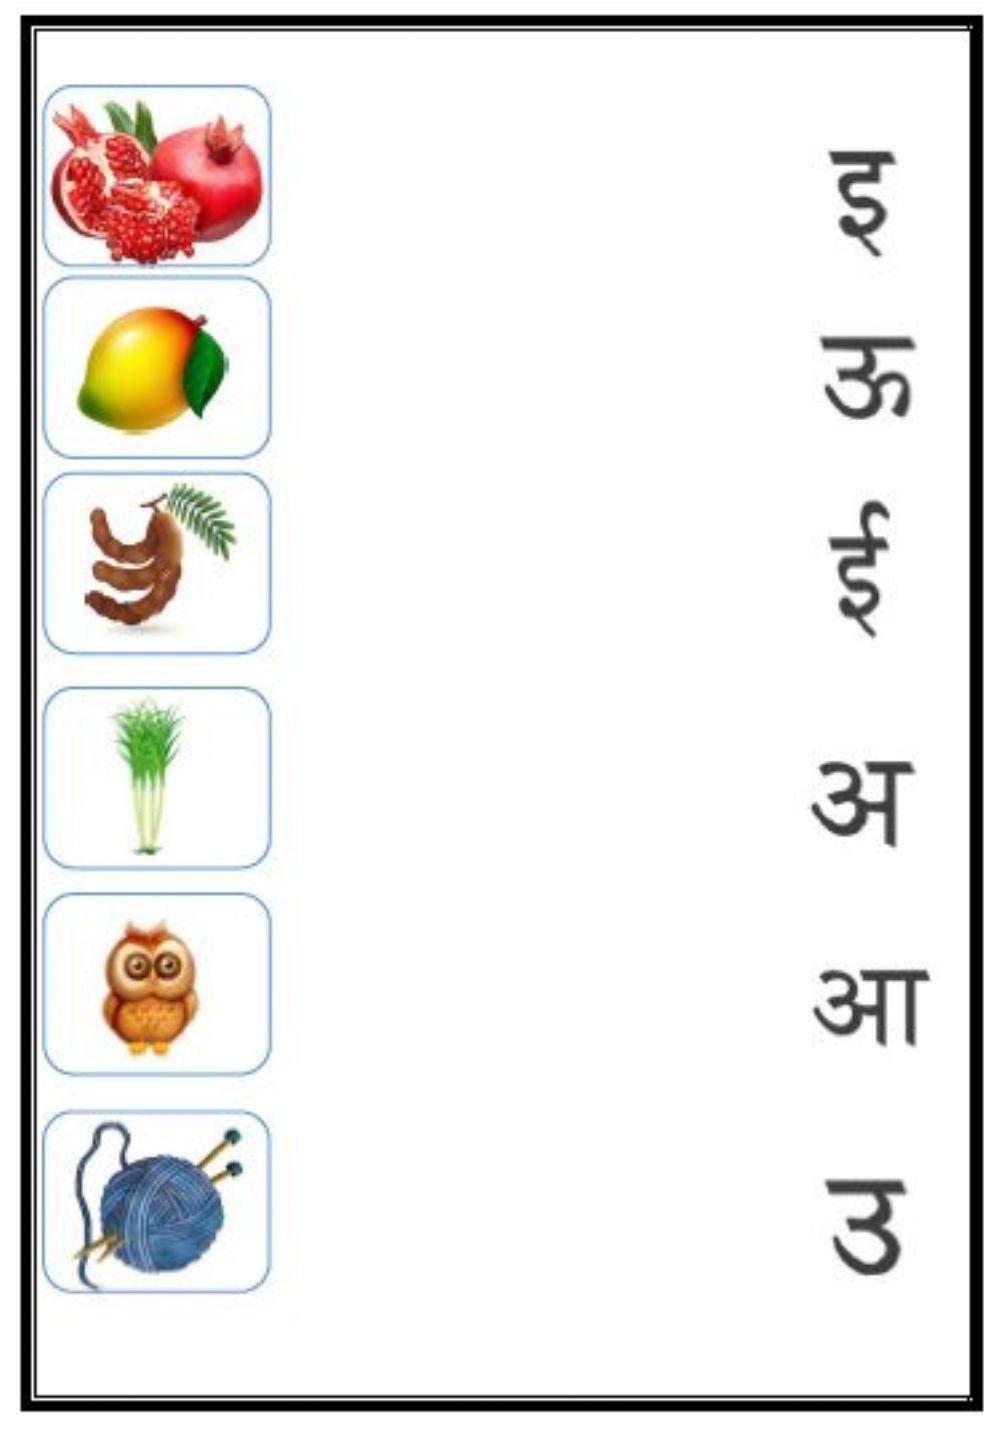 Hindi Worksheet on Alphabets